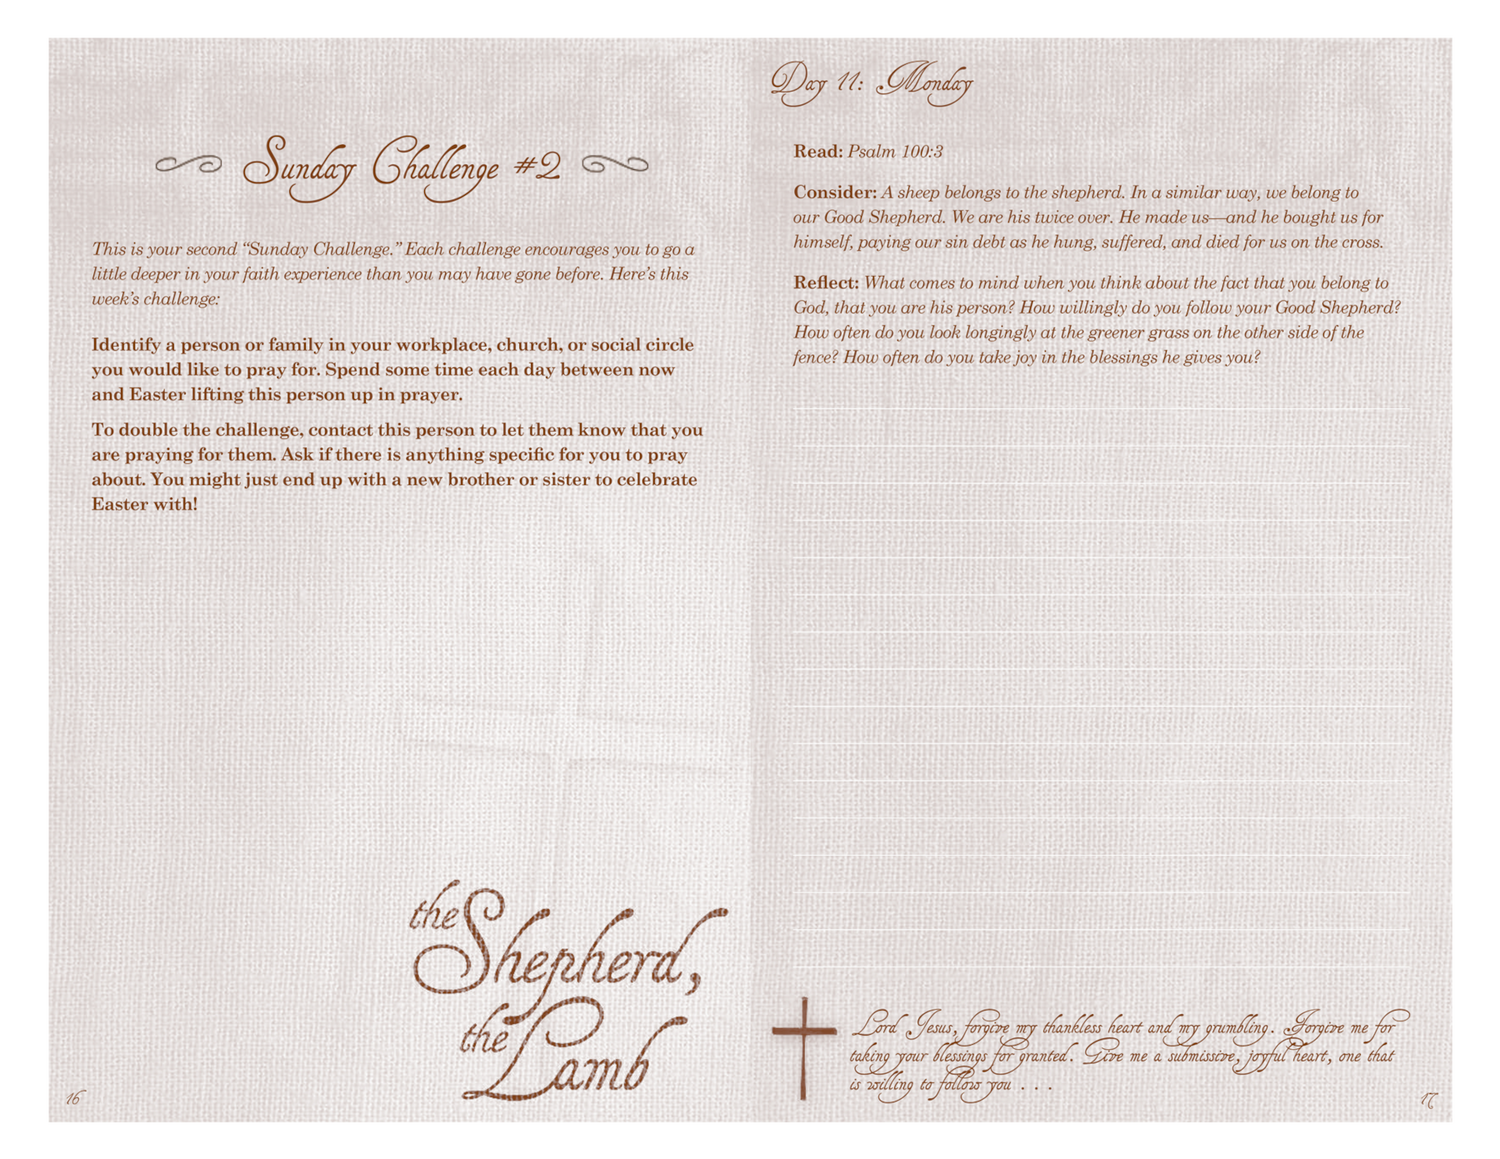 Inside spread of the Shepherd the Lamb prayer journal for Lent